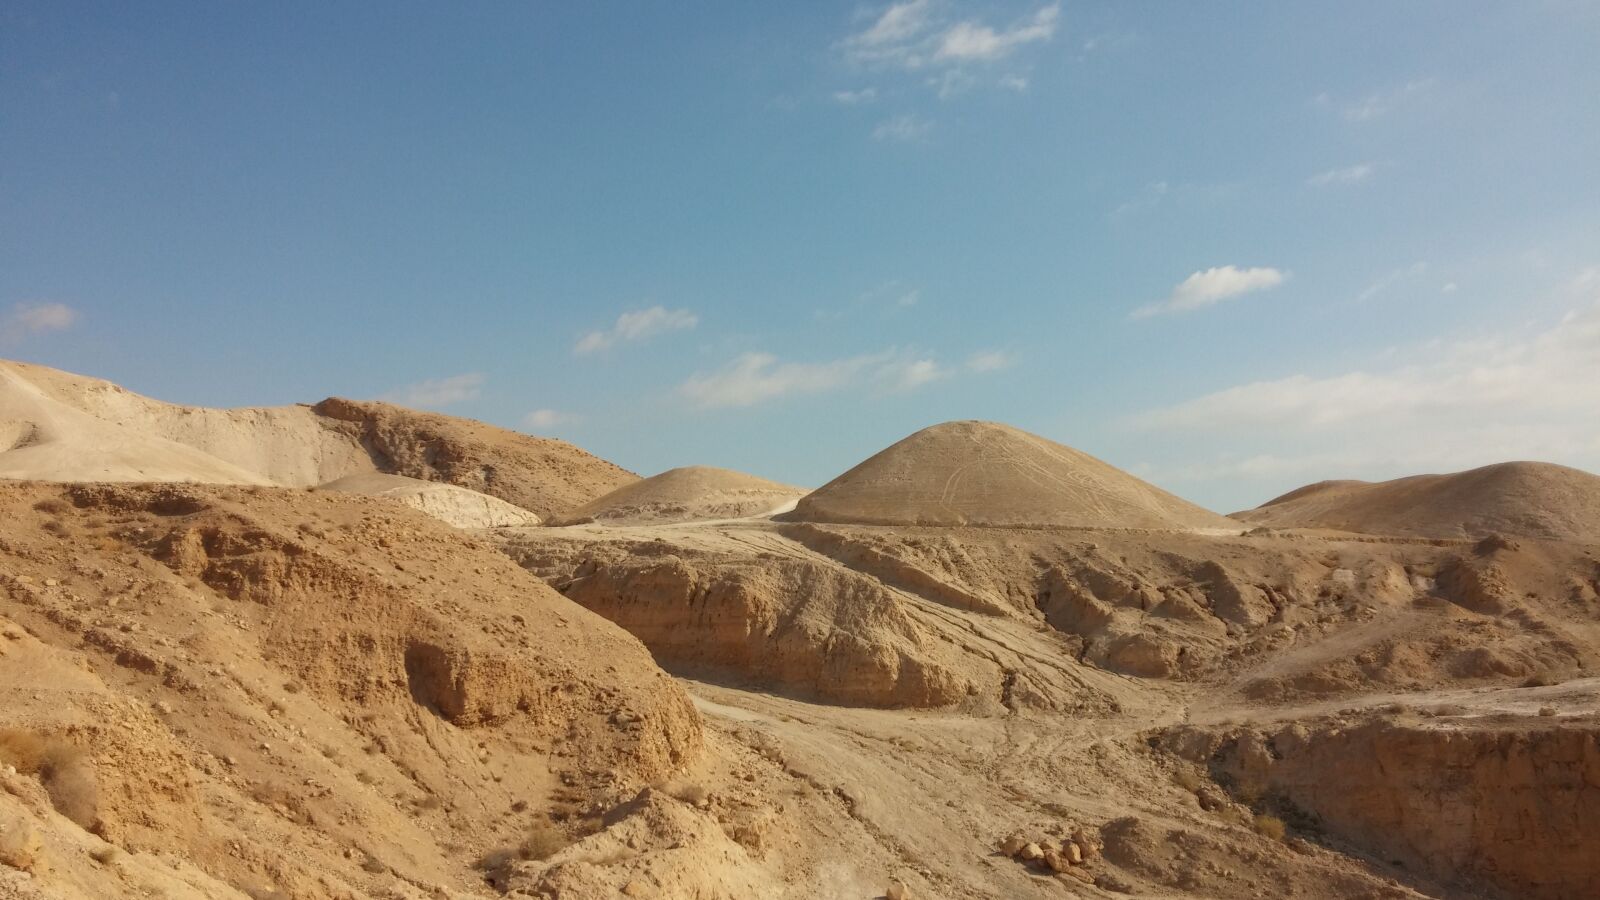 LG G2 sample photo. Sand, desert, judaean desert photography